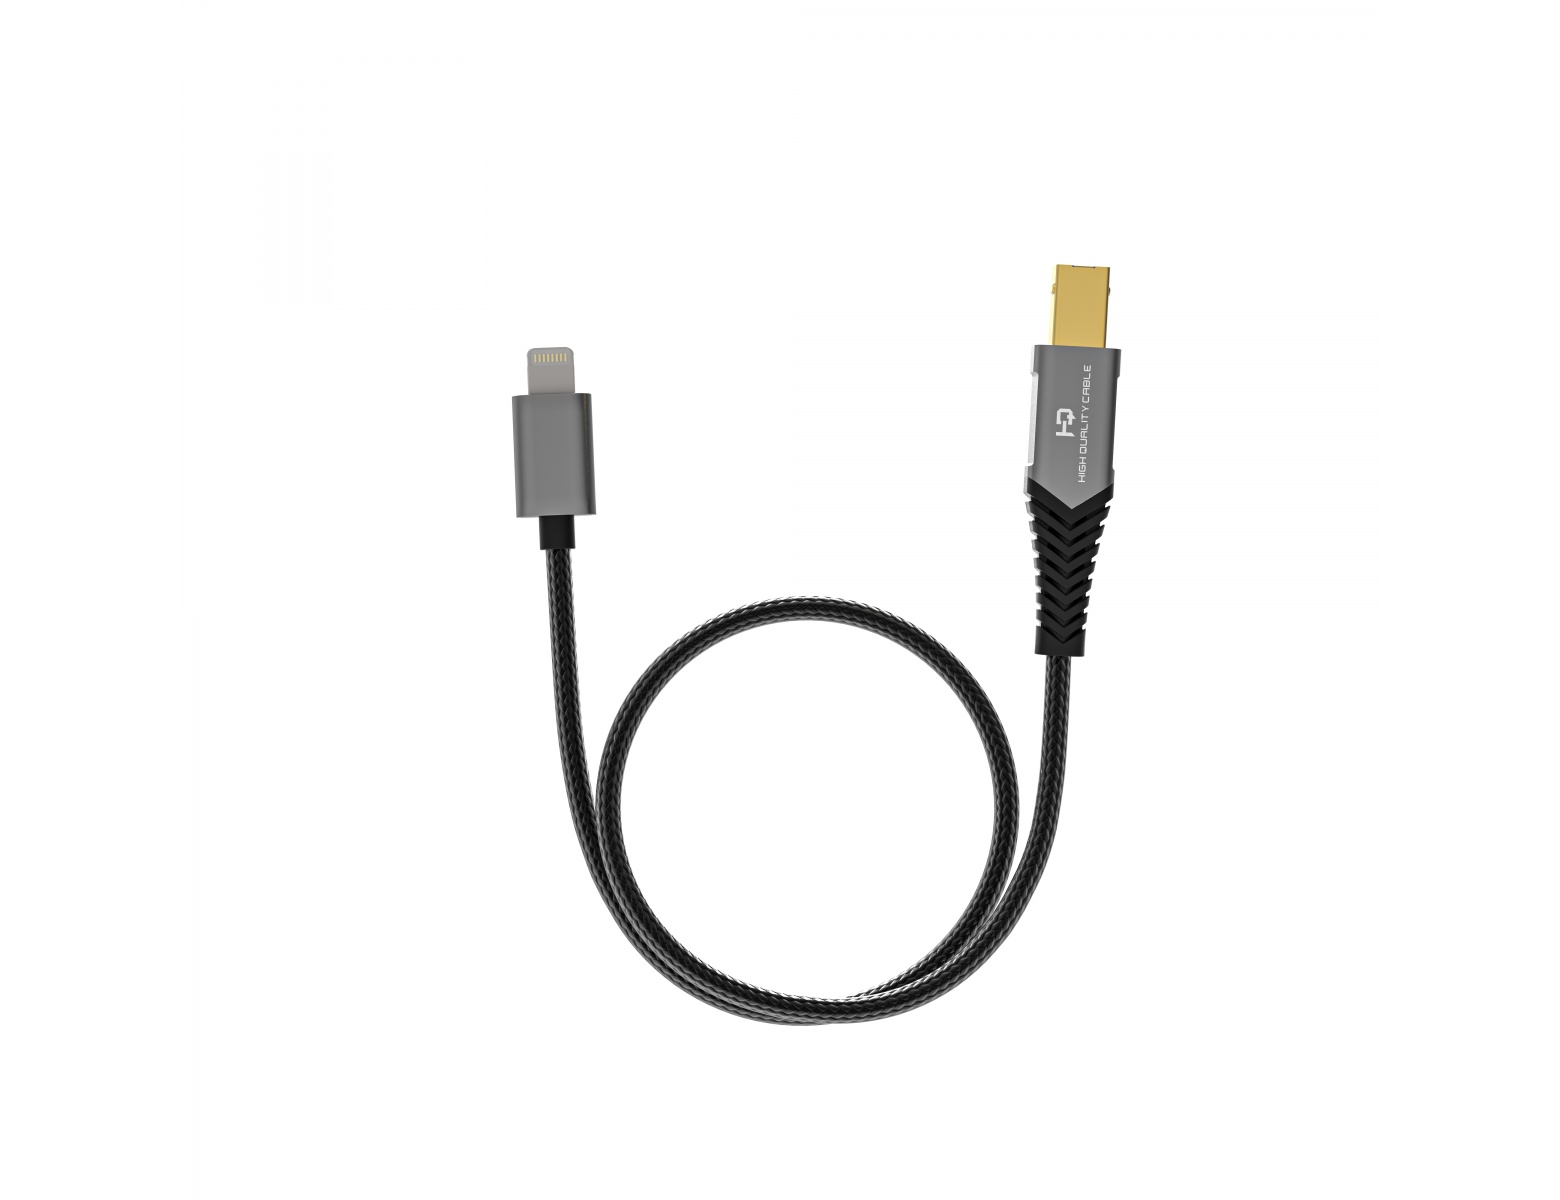 Adattatore audio da USB C a 3,5 mm, adattatore jack per cuffie femmina da  USB tipo C a 3,5 mm, adattatore per cuffie USB C Adattatore aux cavo dac ad  alta fedeltà